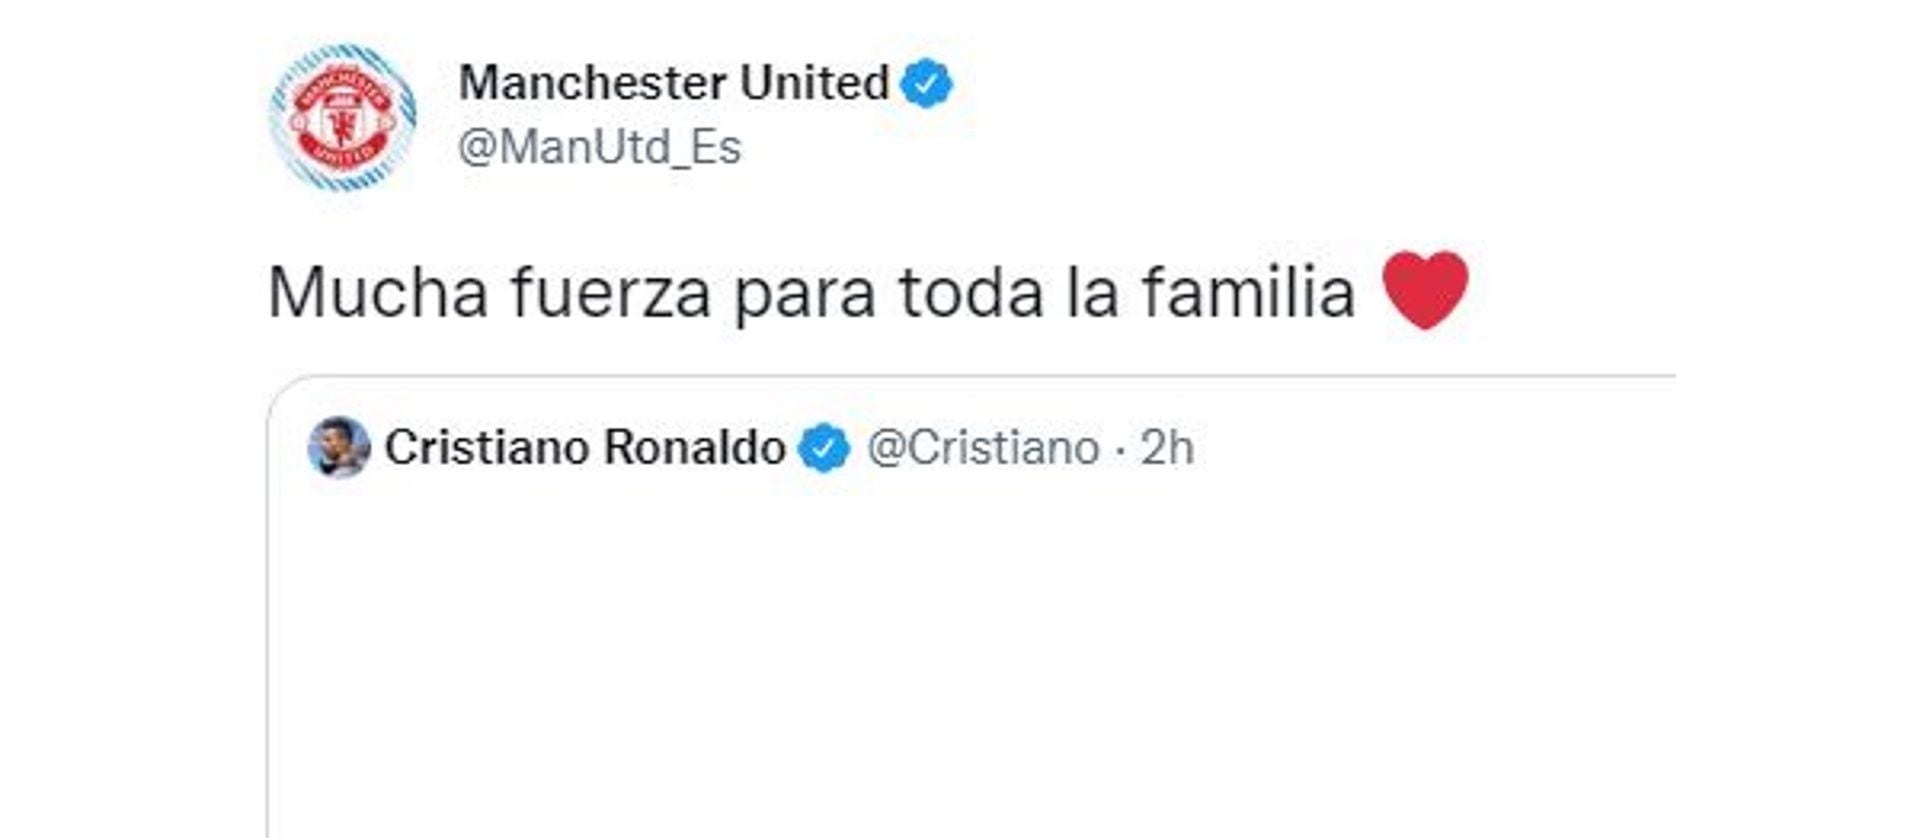 El sitio oficial del Manchester United en Español envió fuerza a toda la familia